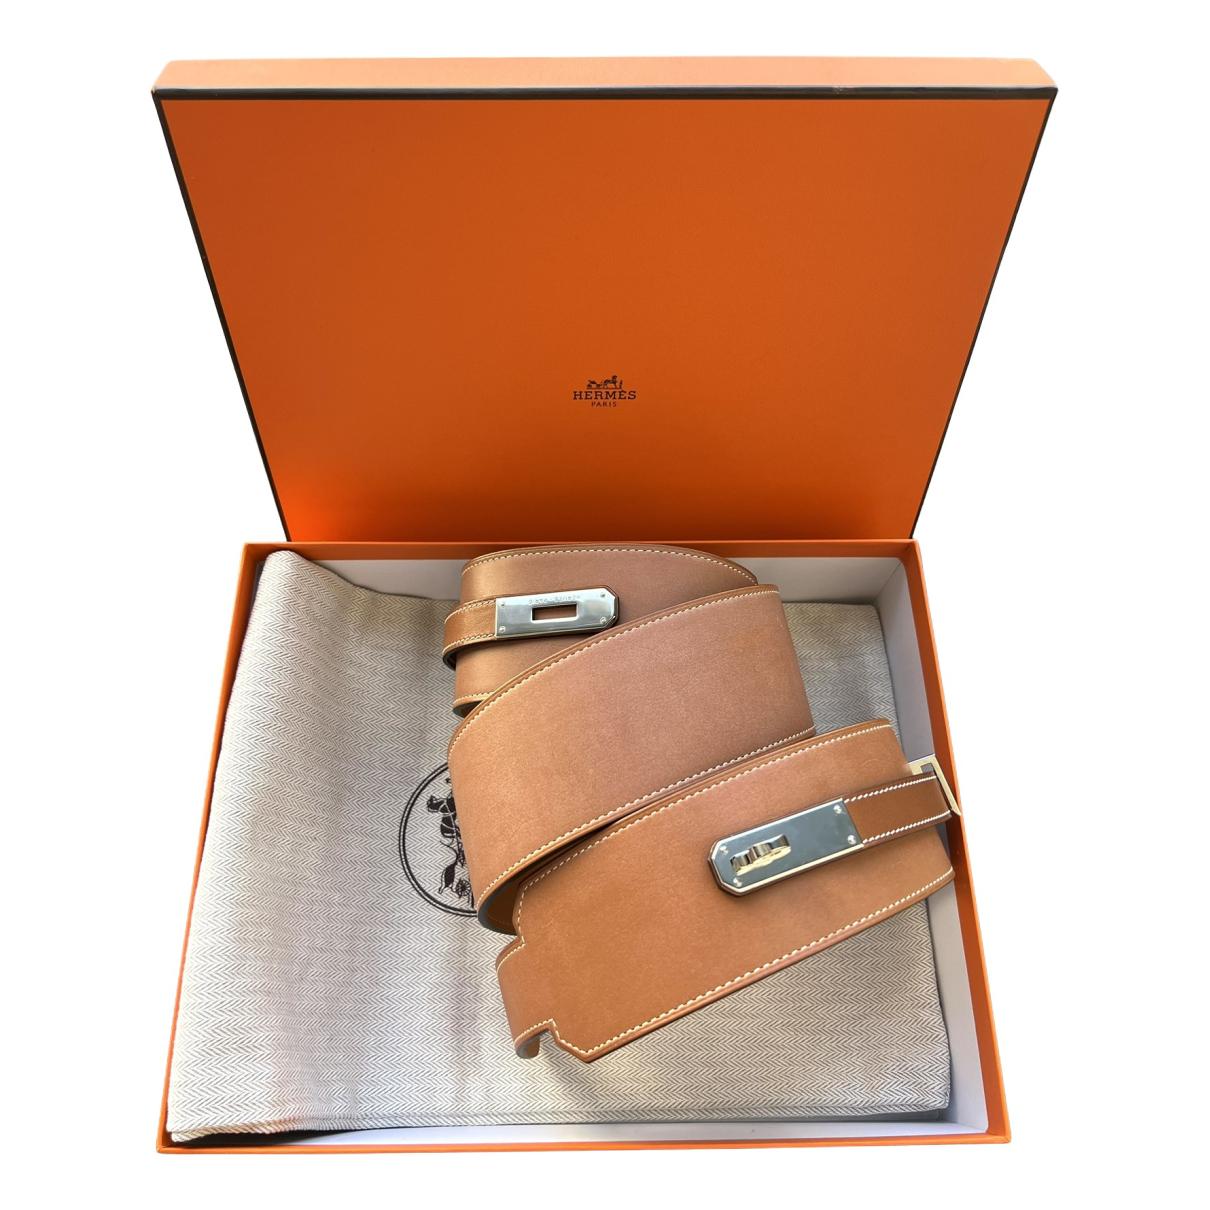 Kelly pocket leather belt Hermès Beige size 85 cm in Leather - 28401692